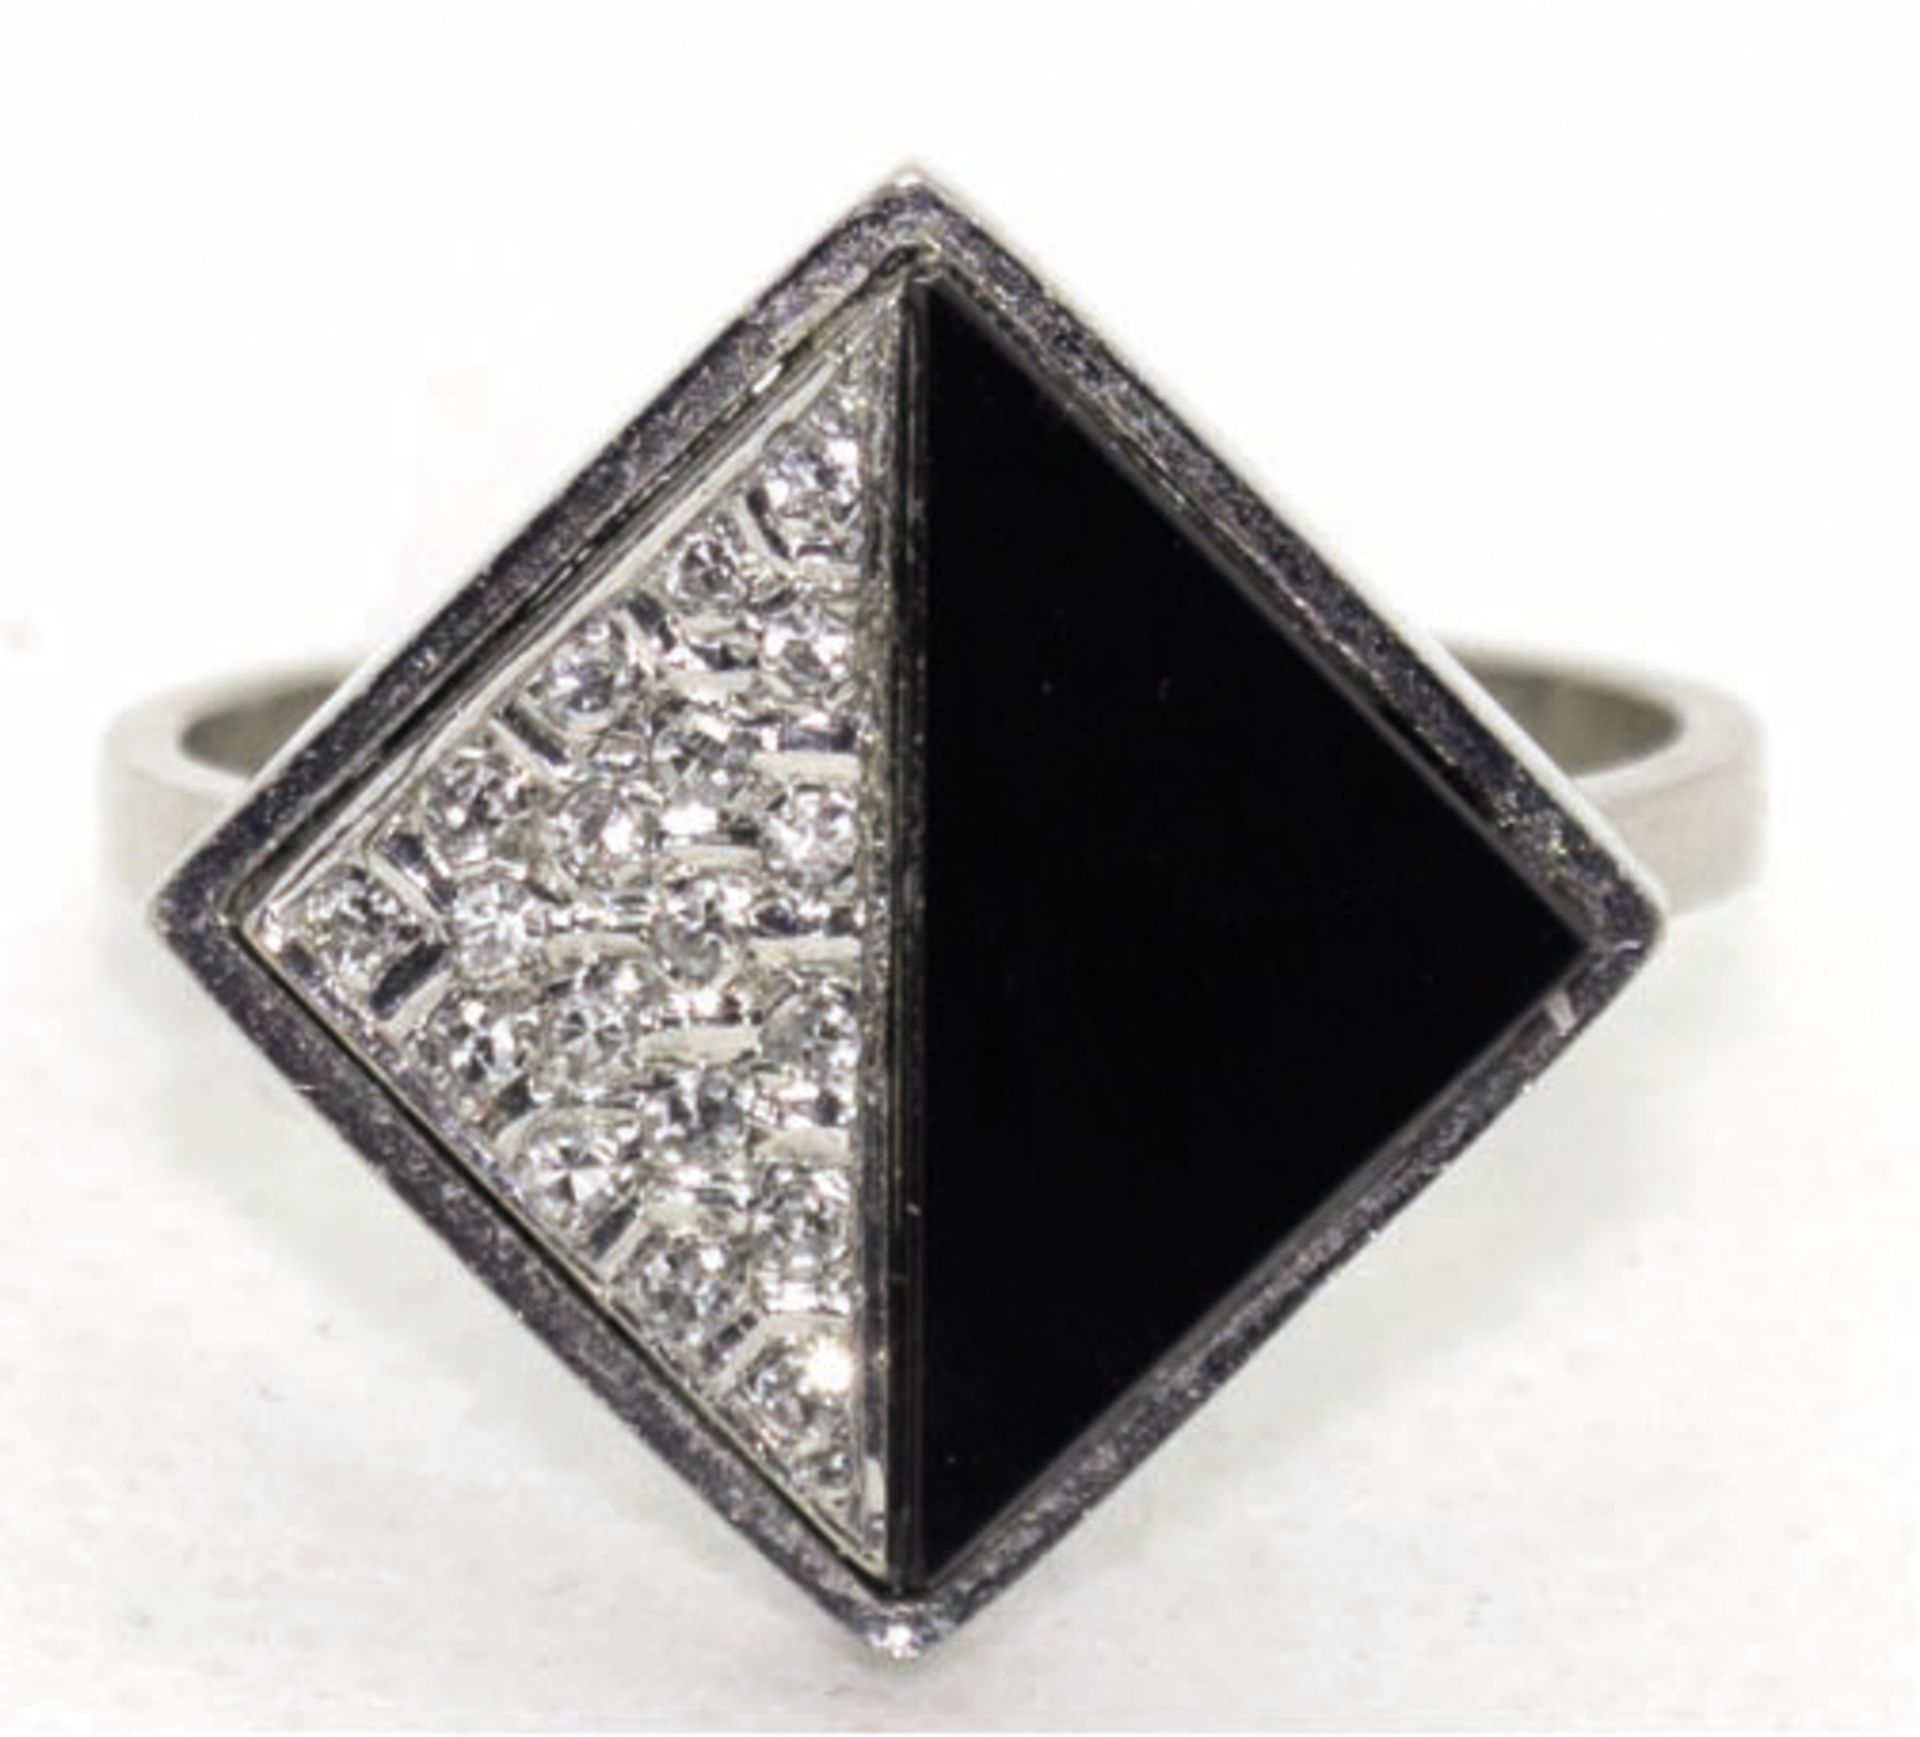 Ring, 585er WG, rautenförmiger Ringkopf besetzt mit 19 Brillanten von zus. ca. 0,19 ct. und dreieck